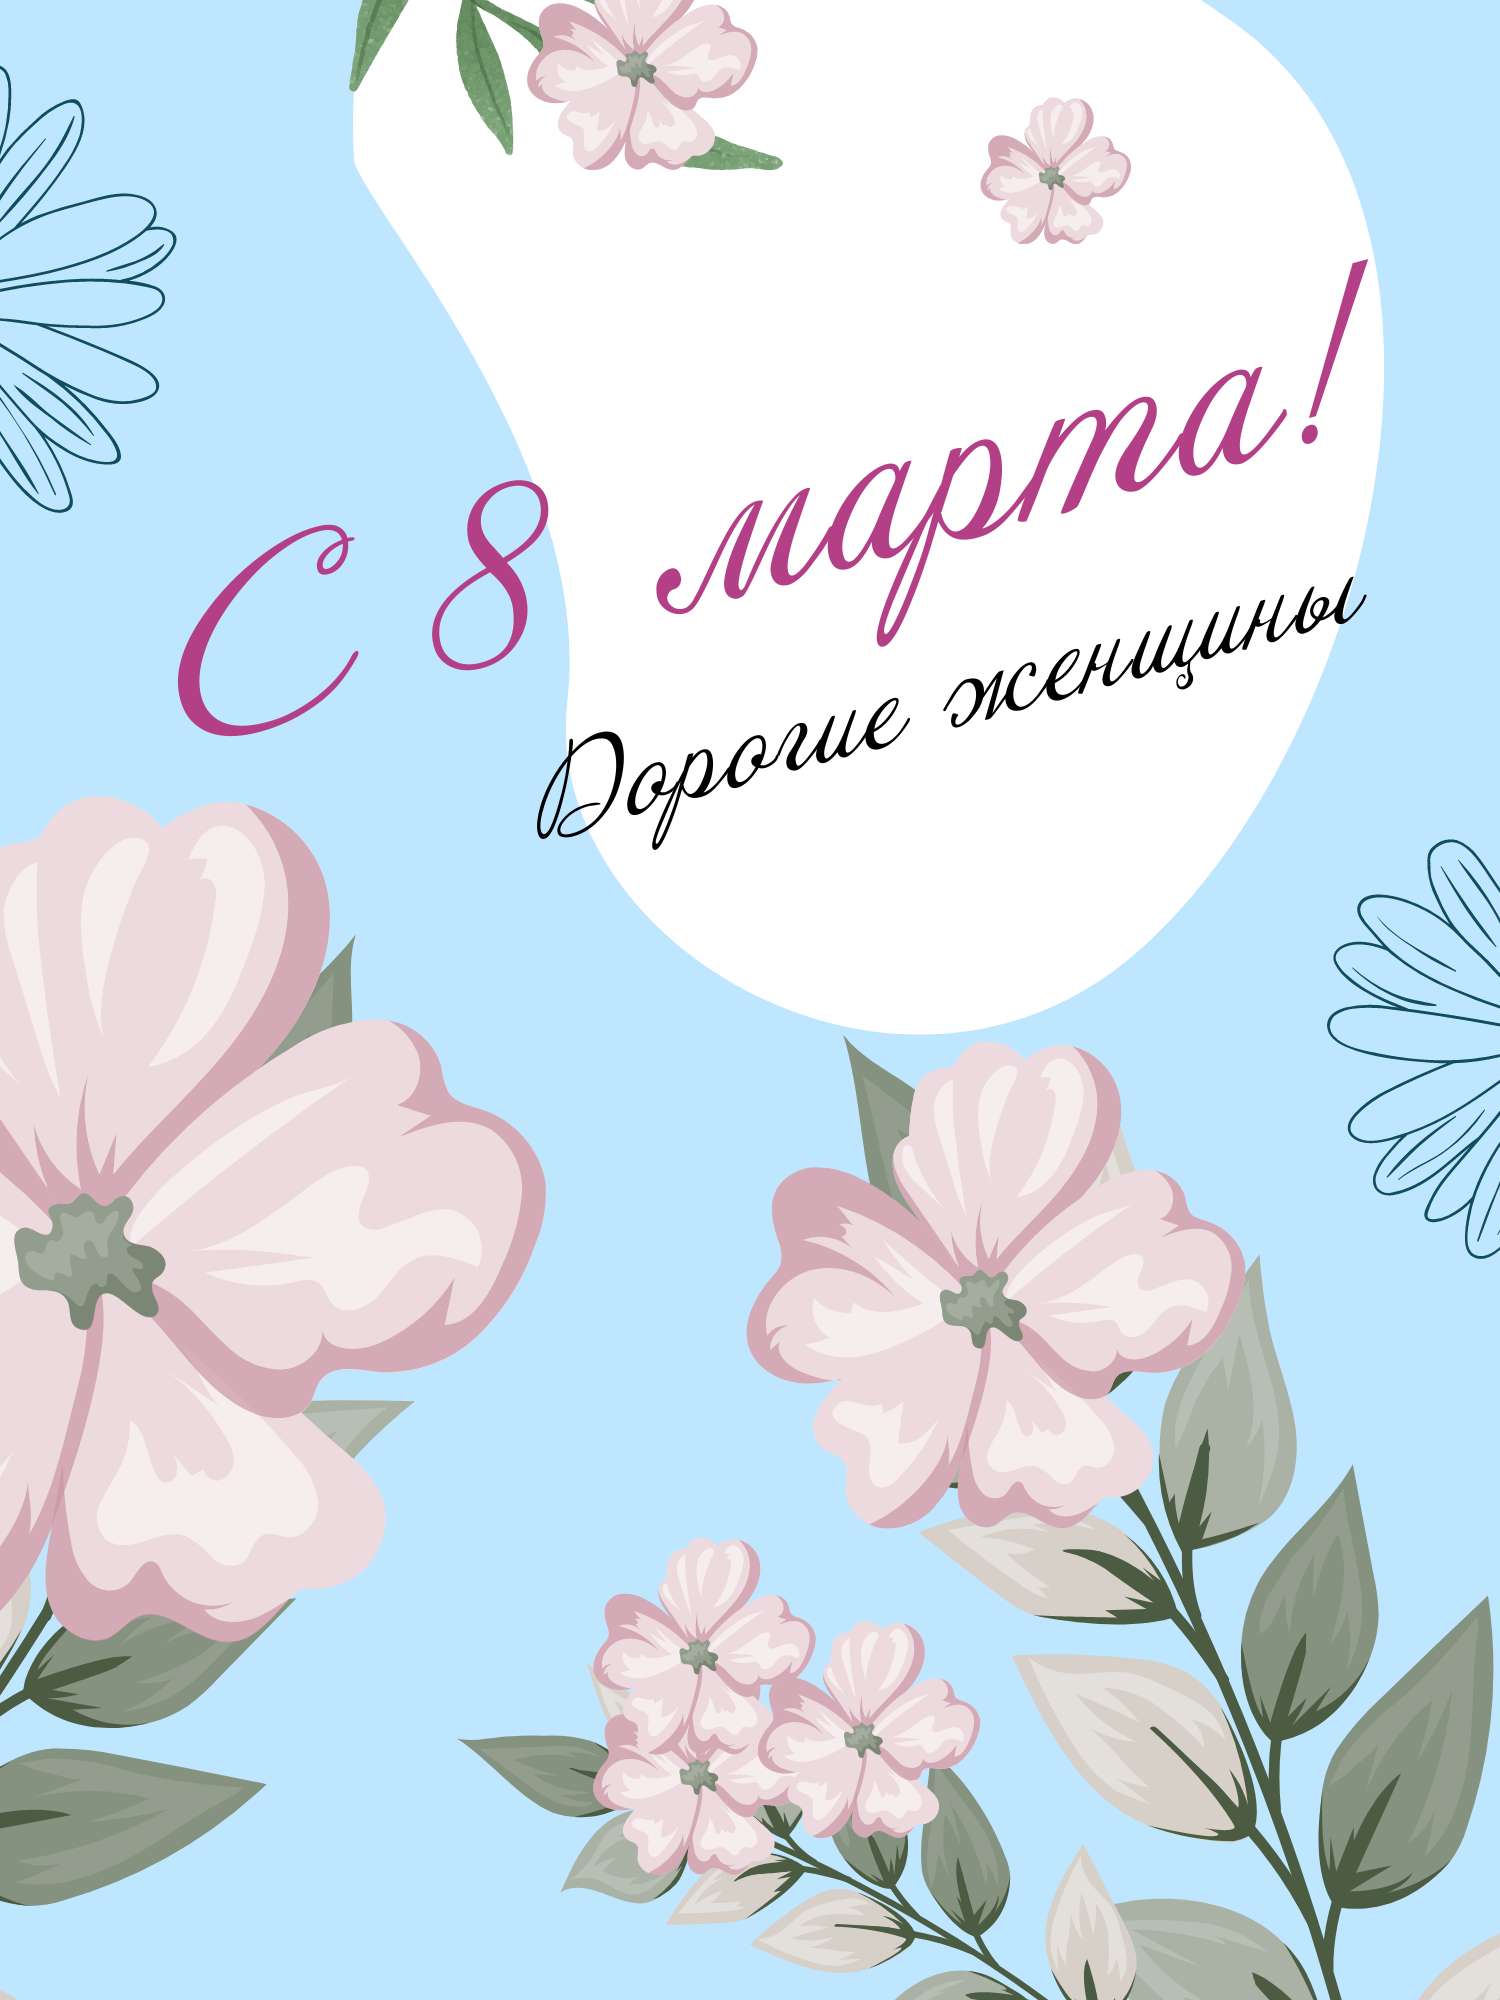 Симпатичная светло-голубая открытка в день 8 марта с иллюстрациями цветов